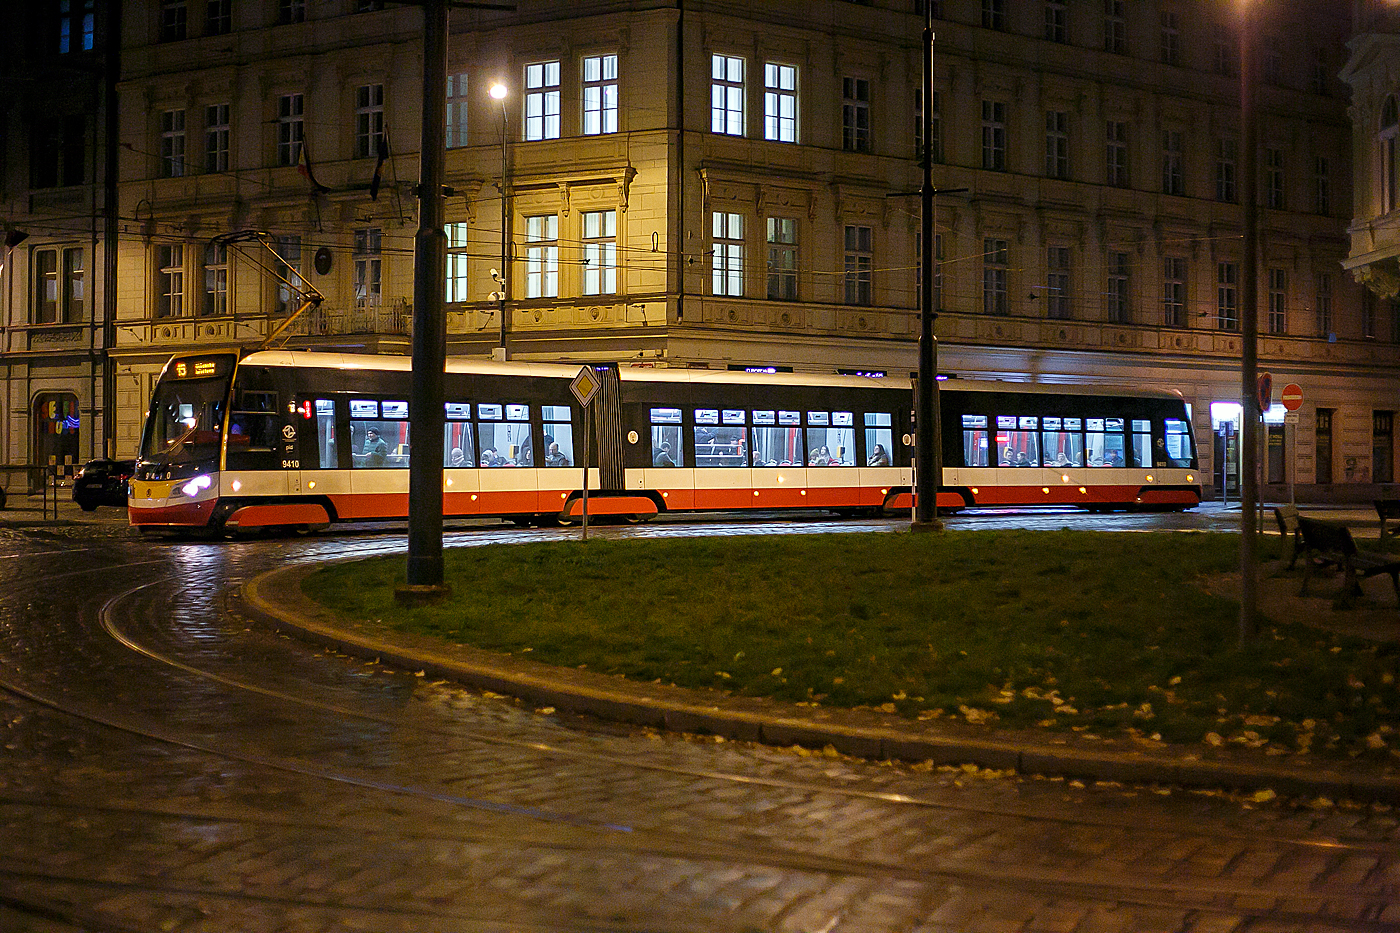 Straenbahn Prag, der Triebwagen DPP 9410, ein dreiteiliger achtachsiger koda 15T4 am 22.11.2022, als Linie 19, auf der Senovn nměst Prag.

Der Triebwagen vom Typ koda 15T4, auch koda ForCity Alfa (Version Prag) wurde 2017 von koda unter der Fabriknummer 10368 gebaut.

Die Straenbahn ForCity Alfa Prag ist die weltweit erste in Serie gebaute 100% Niederflurstraenbahn mit drehbaren Fahrwerken (Drehgestellen) und hat auch als erste getriebelose Motorenantriebe, bei denen alle Rder der vier achsenlosen Drehgestelle mit Permanentmagneten angetrieben werden. Die Endwagen sind mit normalen (achsenlosen) Drehgestellen ausgerstet, die mittleren Drehgestelle sind als achsenlose Jakobsdrehgestelle ausgefhrt. Die Position der Fahrwerke unter den bergangsfaltenblgen ermglicht die maximale Variabilitt bei der Einrichtung des Innenraums. ber den Drehgestellen wird der Fuboden (ohne Stufen) von 350 mm auf 450 mm Bodenhhe angehoben und bildet einen Verbindungsgang mit einer Breite von 700 mm in Bodennhe.

Bei einer Lnge von 31,4 m und einer Breite von knapp 2,5 m kann dieserdreiteilige Einrichtungs-Straenbahn-Triebwagen bei einer Spurweite von 1.435 mm 180 Passagiere befrdern (4 Personen /m), davon 61 auf Sitzpltzen.Sechs breite Zweiflgeltren ermglichen den schnellen Ein- und Ausstieg. Unter anderem aufgrund der Fhigkeit Bogen glatt zu durchfahren verringert die Straenbahn Fahrzeiten und beschleunigt damit den Verkehr.

Nach strengen Tests zwischen 2008 und 2010 wurden diese Fahrzeuge seit 2011 kontinuierlich an die tschechische Hauptstadt geliefert und die letzte 250. Straenbahn wurde im Februar 2019 geliefert.

Die dreiteiligen koda 15T sind damit Nachfolger der ebenfalls von koda produzierten fnfteiligen 14T. Im Gegensatz zu den 14T in Multigelenkbauweise erhielten die 15T wieder echte Drehgestelle, wobei es dem Hersteller erstmals gelang, ber Jakobsdrehgestellen einen stufenfreien und durchgehend niederflurigen Innenraum zu realisieren. Alle Fahrzeuge der zweiten Serie (125 Fahrzeuge), auch als koda 15T4 bezeichnet, die ab August 2015 geliefert wurden, sind mit kostenlosem Internetzugang (WiFi) und Klimaanlage ausgestattet.
1 900 mm
	 
TECHNISCHE DATEN:
Hersteller: koda Transportation a.s
Herstellertyp: koda 15T4 /  koda ForCity Alfa (Version Prag)
Spurweite: 	1.435 mm (Normalspur)
Achsformel: Bo’Bo’Bo’Bo’
Lnge ber Kupplung: 31.400 mm
Hhe: 3.600 mm
Breite: 2.460 mm
Leergewicht: 42.000 kg
Hchstgeschwindigkeit: 60 km/h
Dauerleistung: 720 kW (16  45 kW)
Strombertragung: Stromabnehmer
Spannung: 600 V DC (=)
Anzahl der Fahrmotoren: 16 (Drehstrom-Asynchron)
Sitzpltze: 	61
Stehpltze: 223 (4 Personen /m),
Niederfluranteil: 	100 %
Kleinster bef. Halbmesser: 	18 m
Betriebsbremse: elektrodynamische Widerstandsbremse
Feststellbremse: elektrohydraulische Federspeicherbremse
Zusatzbremse: Magnetschienenbremse
